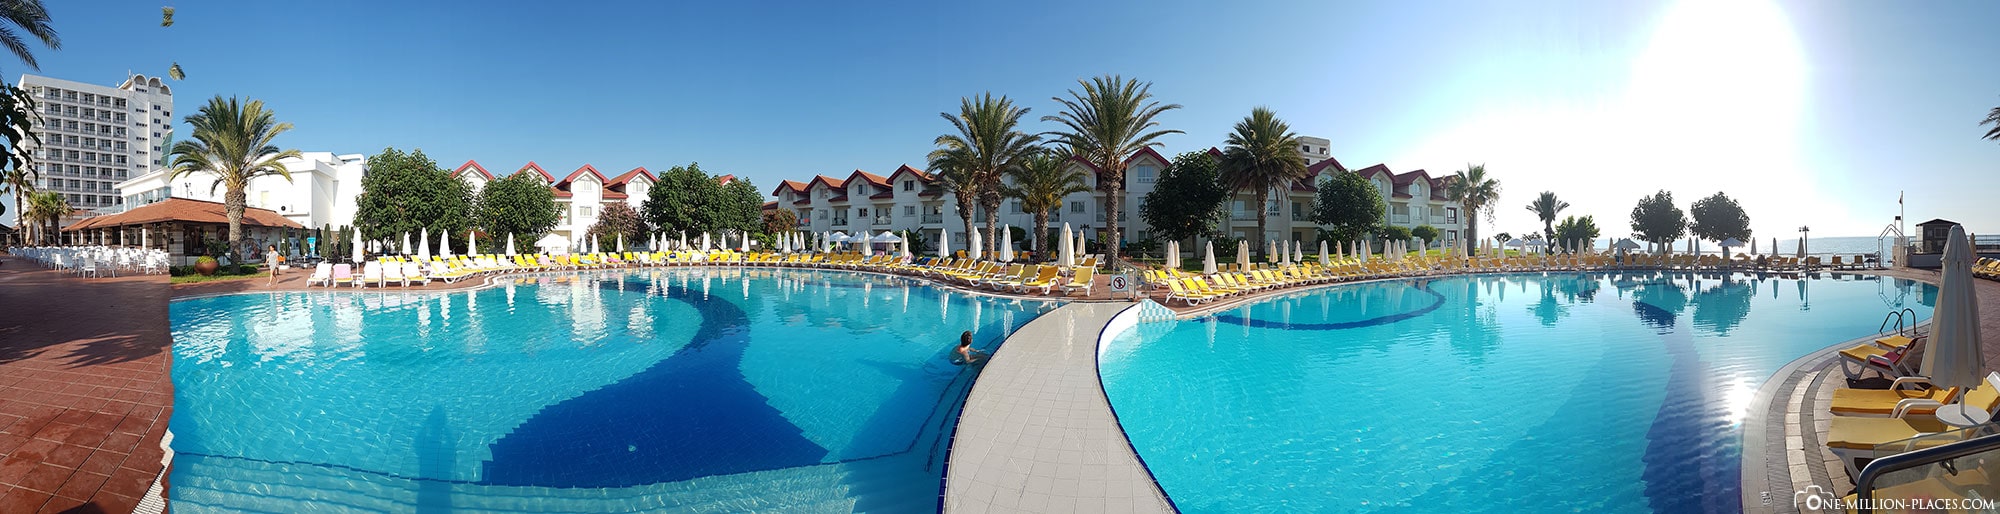 Pool, Salamis Bay Conti Resort, Famagusta, Zypern, Nordzypern, Erfahrungen, Reisebericht